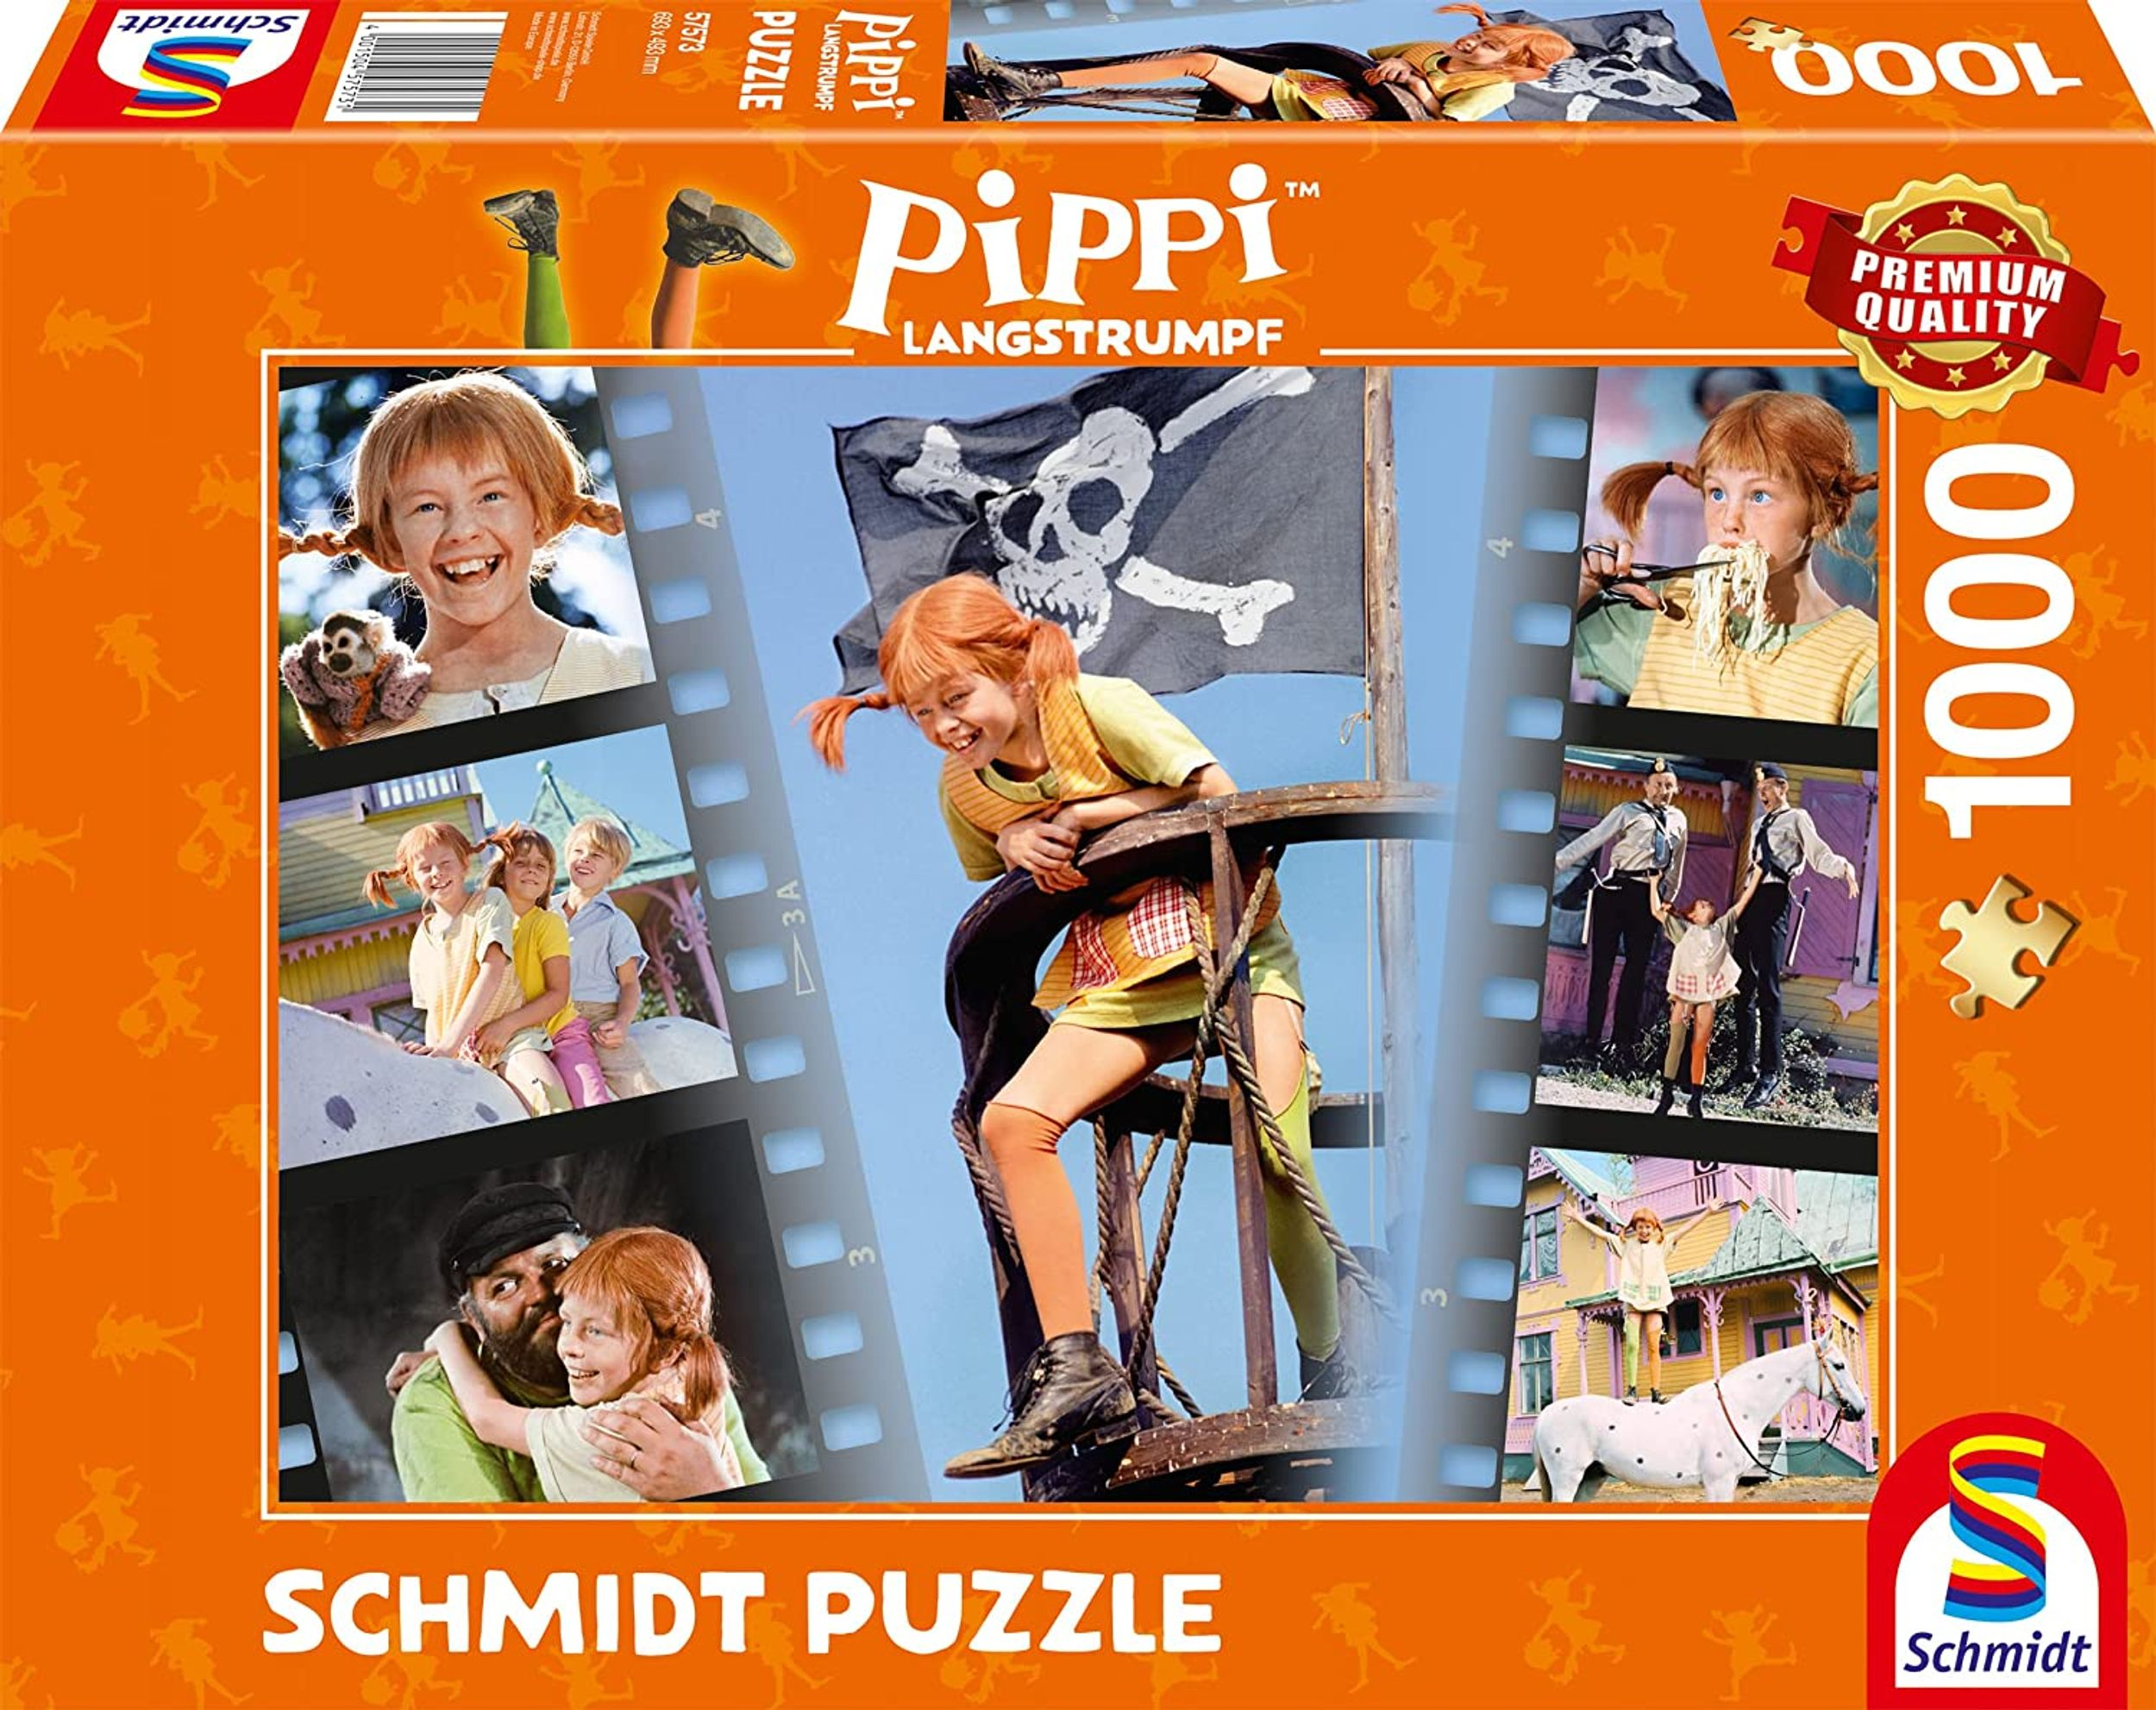 Sei - frech Puzzle und wunderbar SPIELE wild Langstrumpf SCHMIDT Pippi